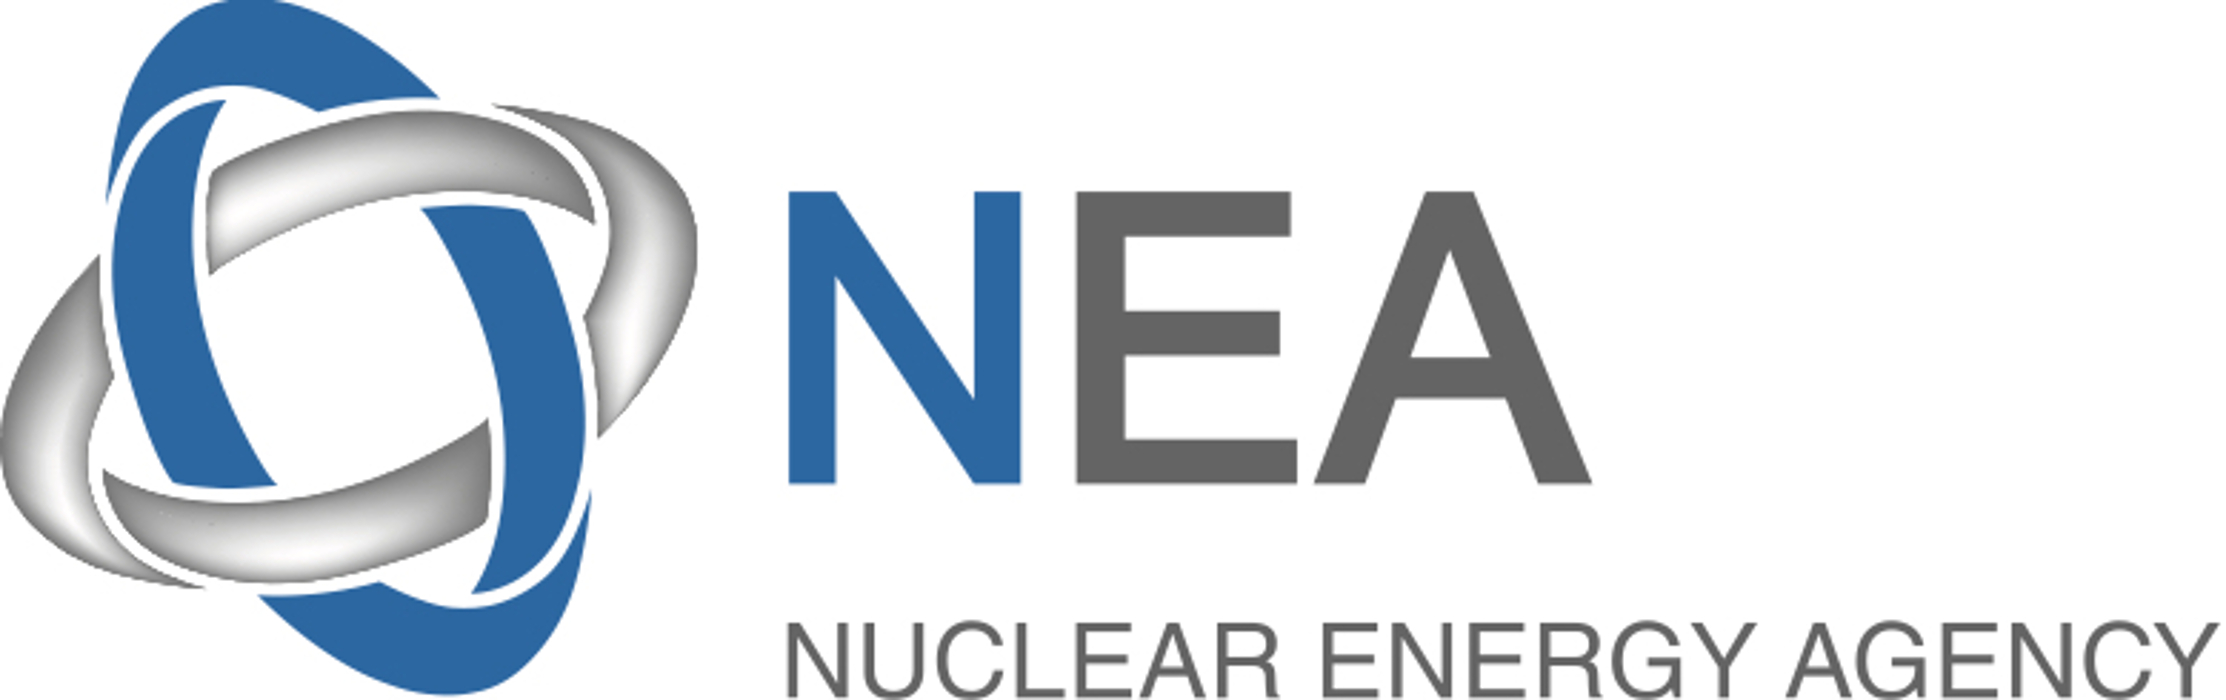 Nuclear Energy Agency